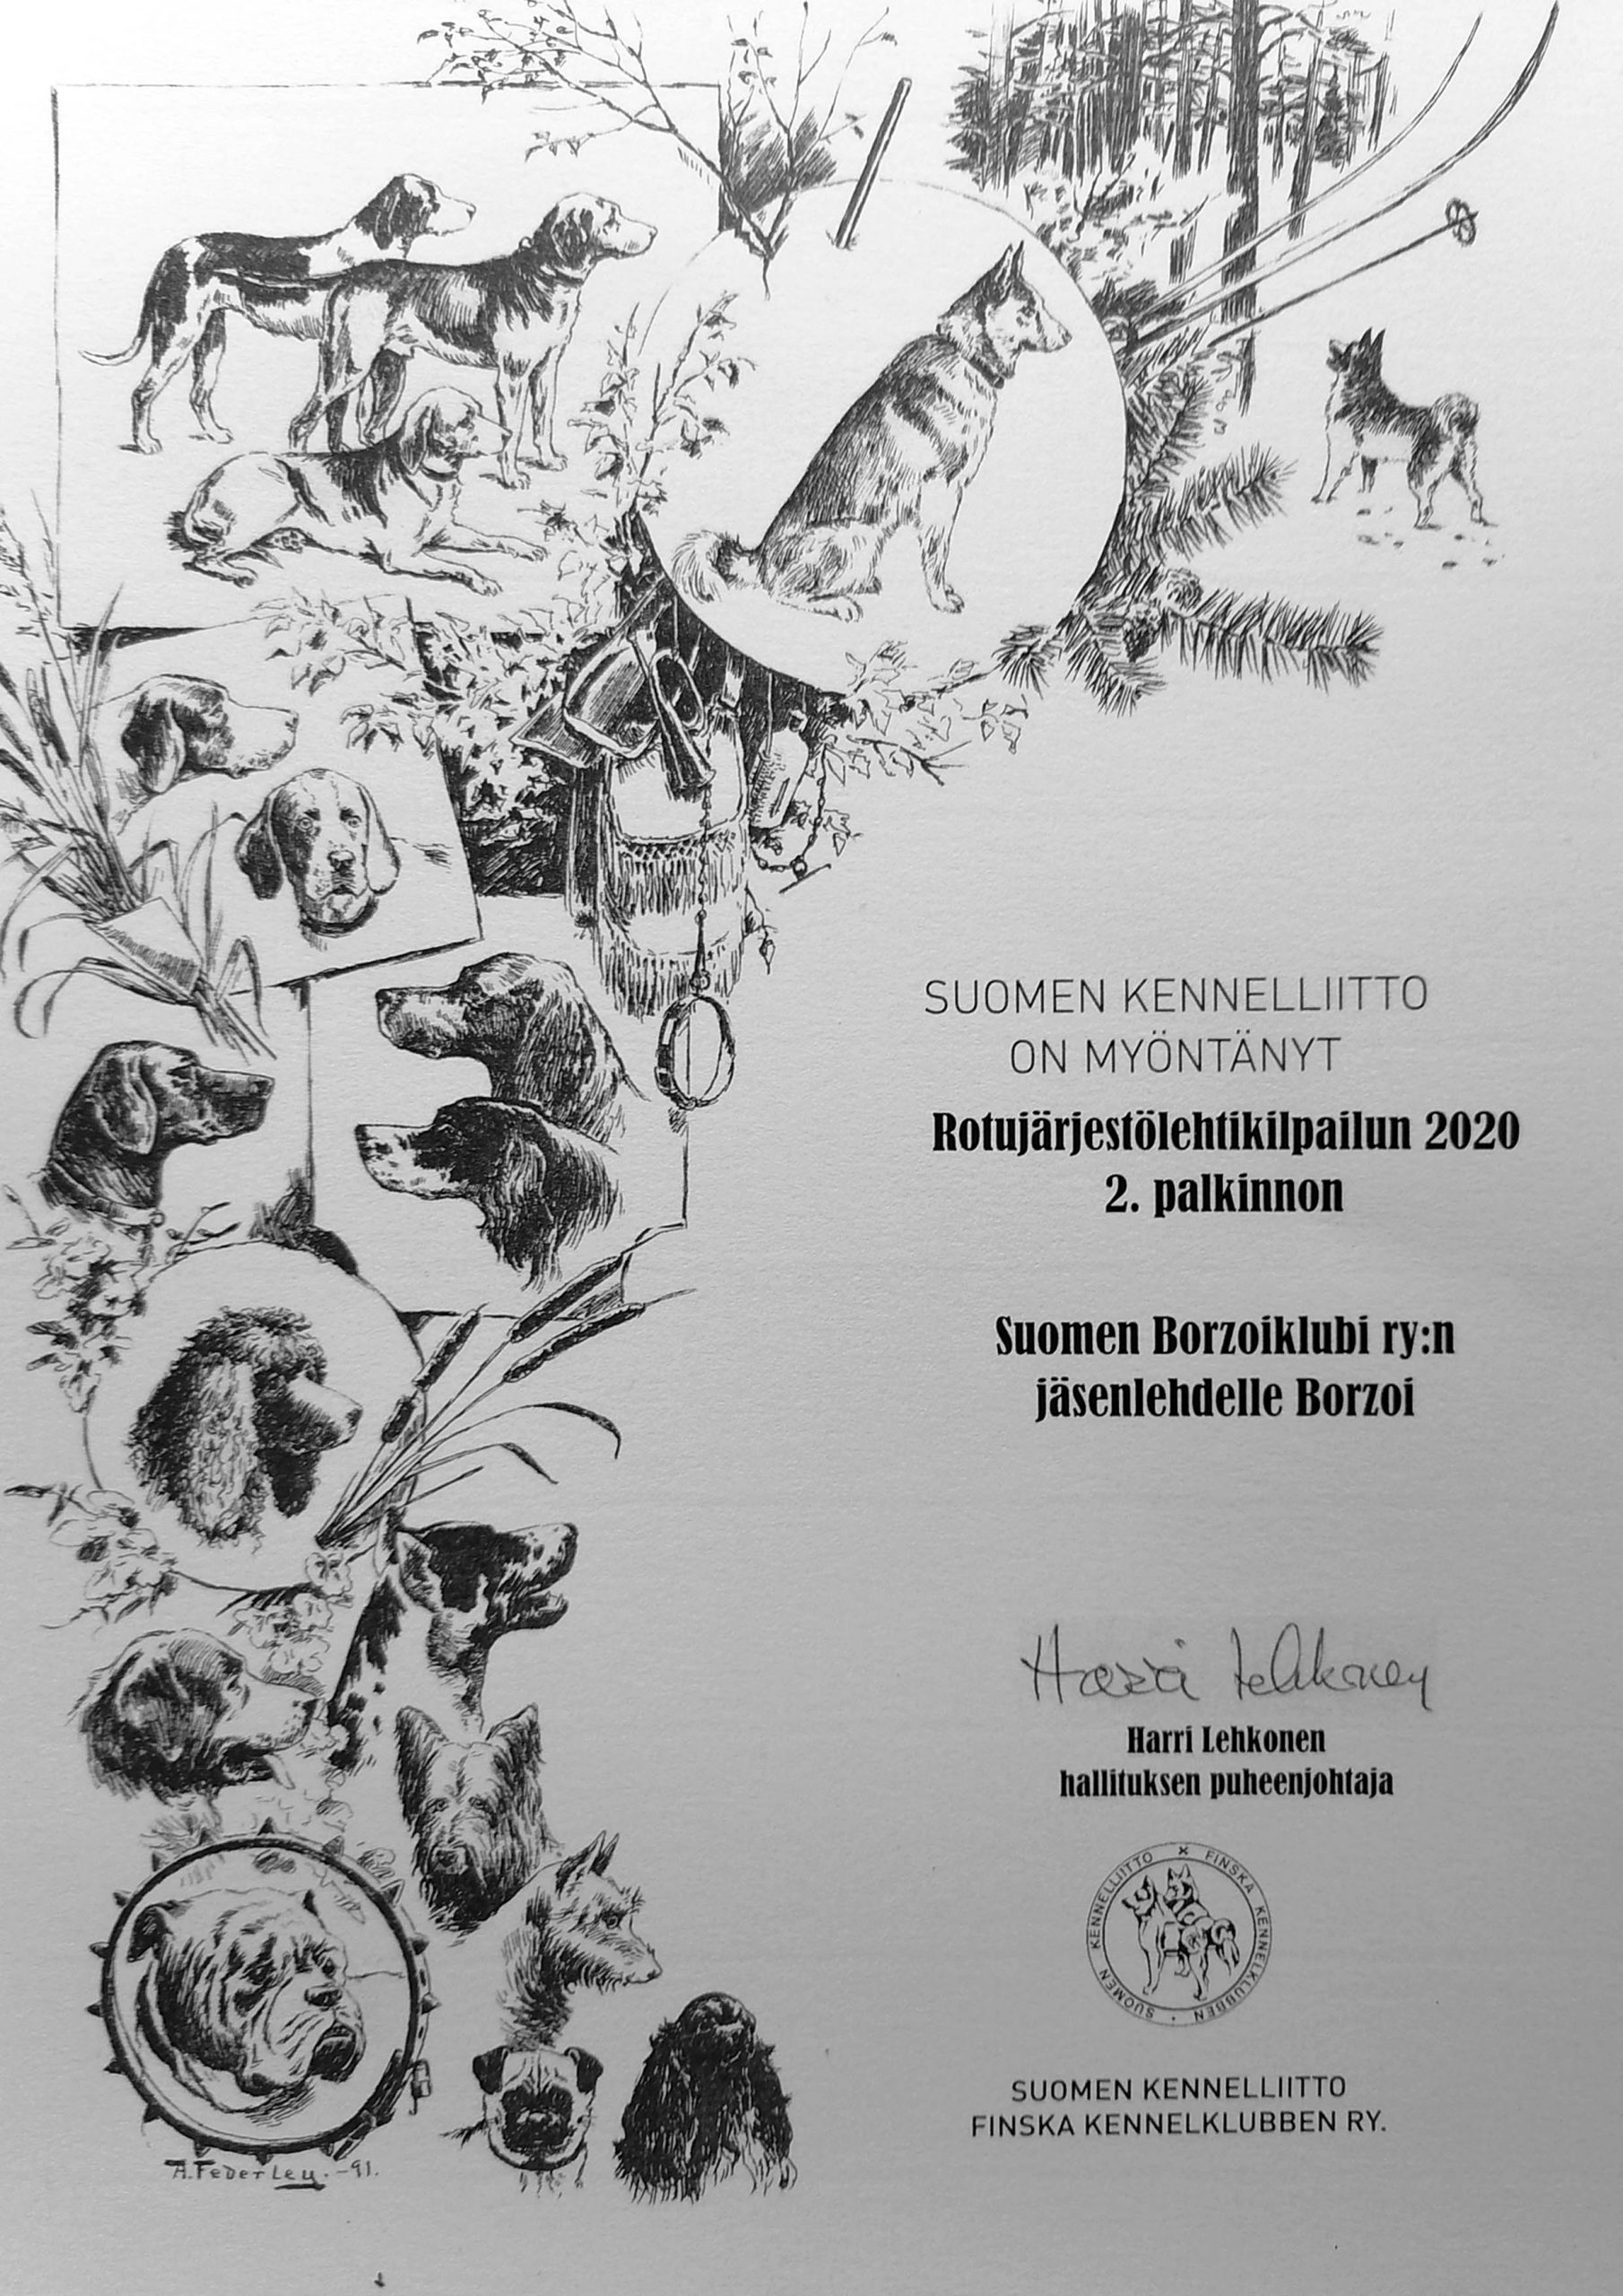 Suomen Kennelliiton rotujärjestölehtikilpailun palkinto 2020